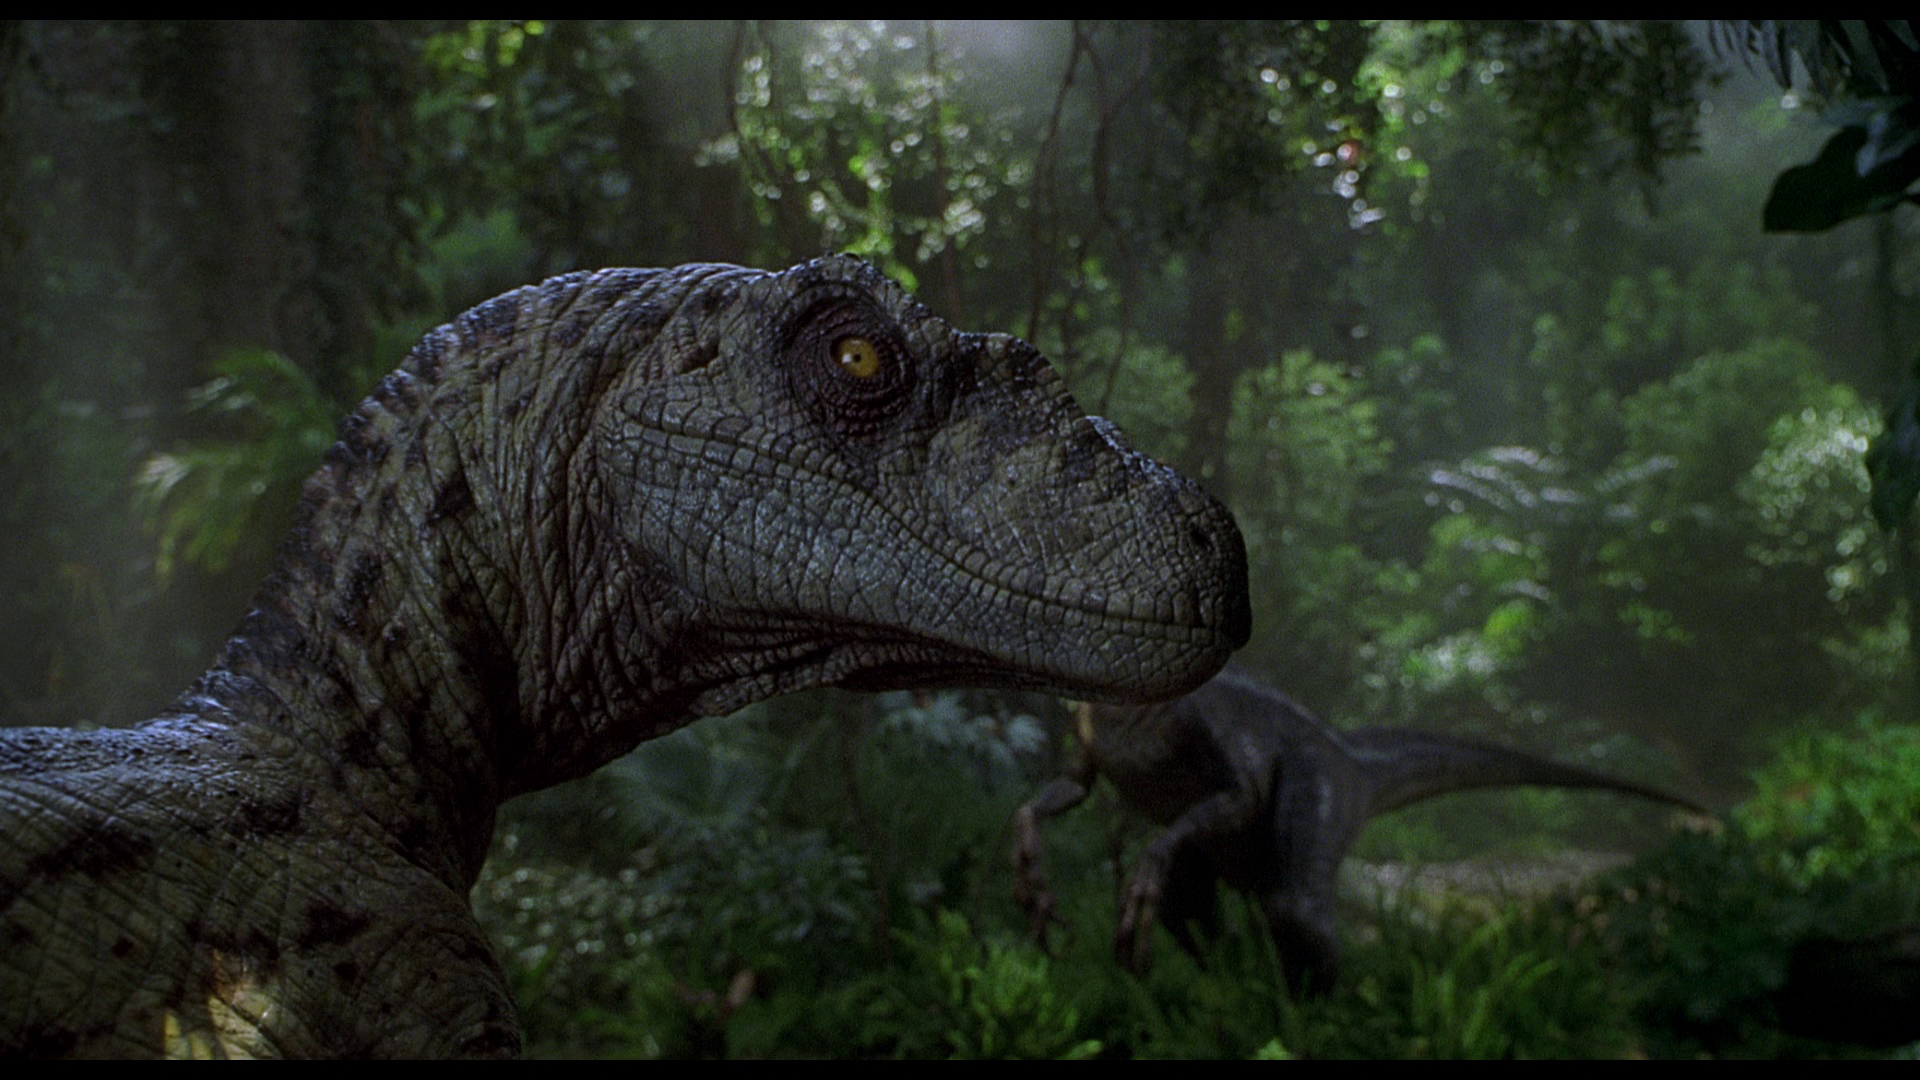 Acho que essa não vai assistir Jurassic World: Reino Ameaçado Hahahaha!